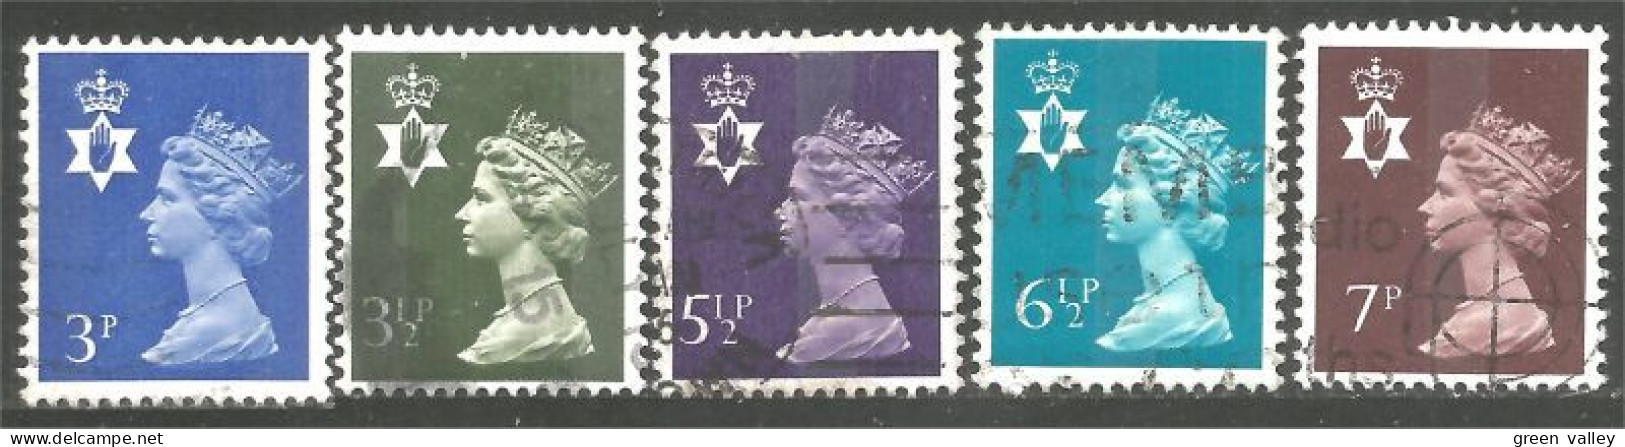 414 G-B Regionals Northern Ireland 5 Stamps Queen Elizabeth (REG-29) - Northern Ireland